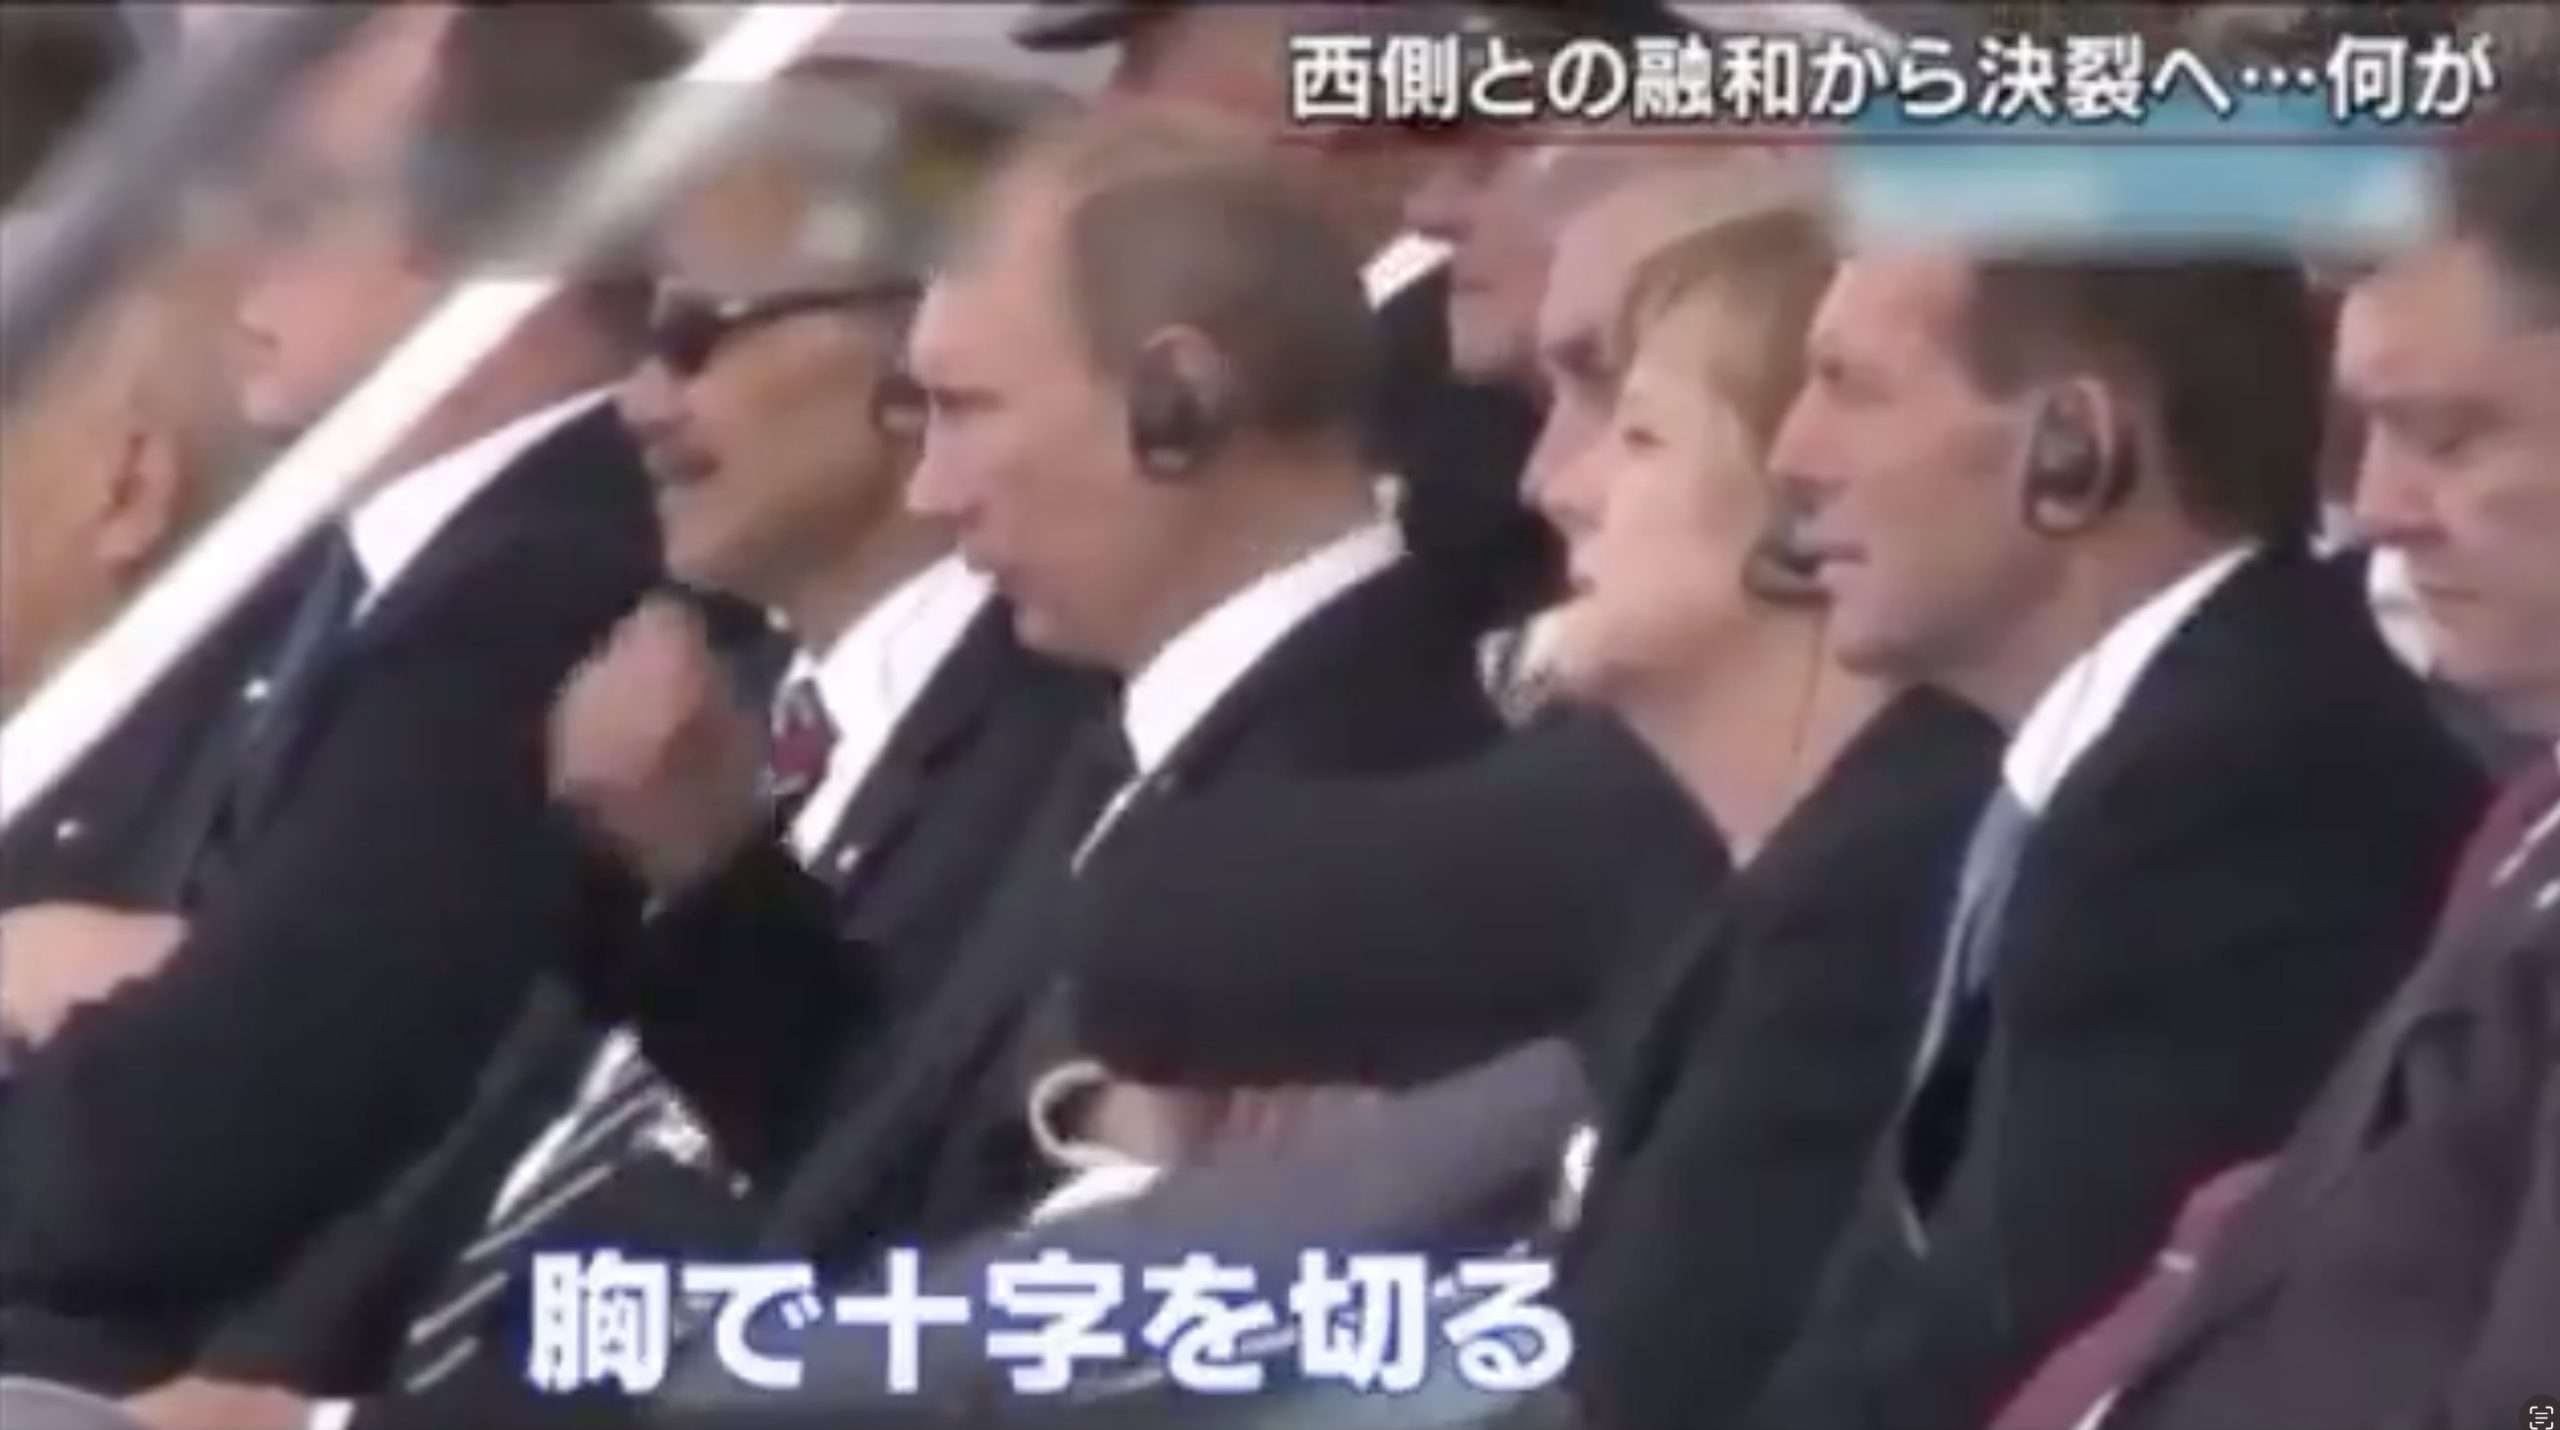 レポーター「原爆の映像が出た時に、会場から拍手が湧きました」長崎の原爆投下の映像が流れ、ガムを噛みながら適当に拍手するオバマ大統領、一方、プーチン大統領は胸で十字を切っていた